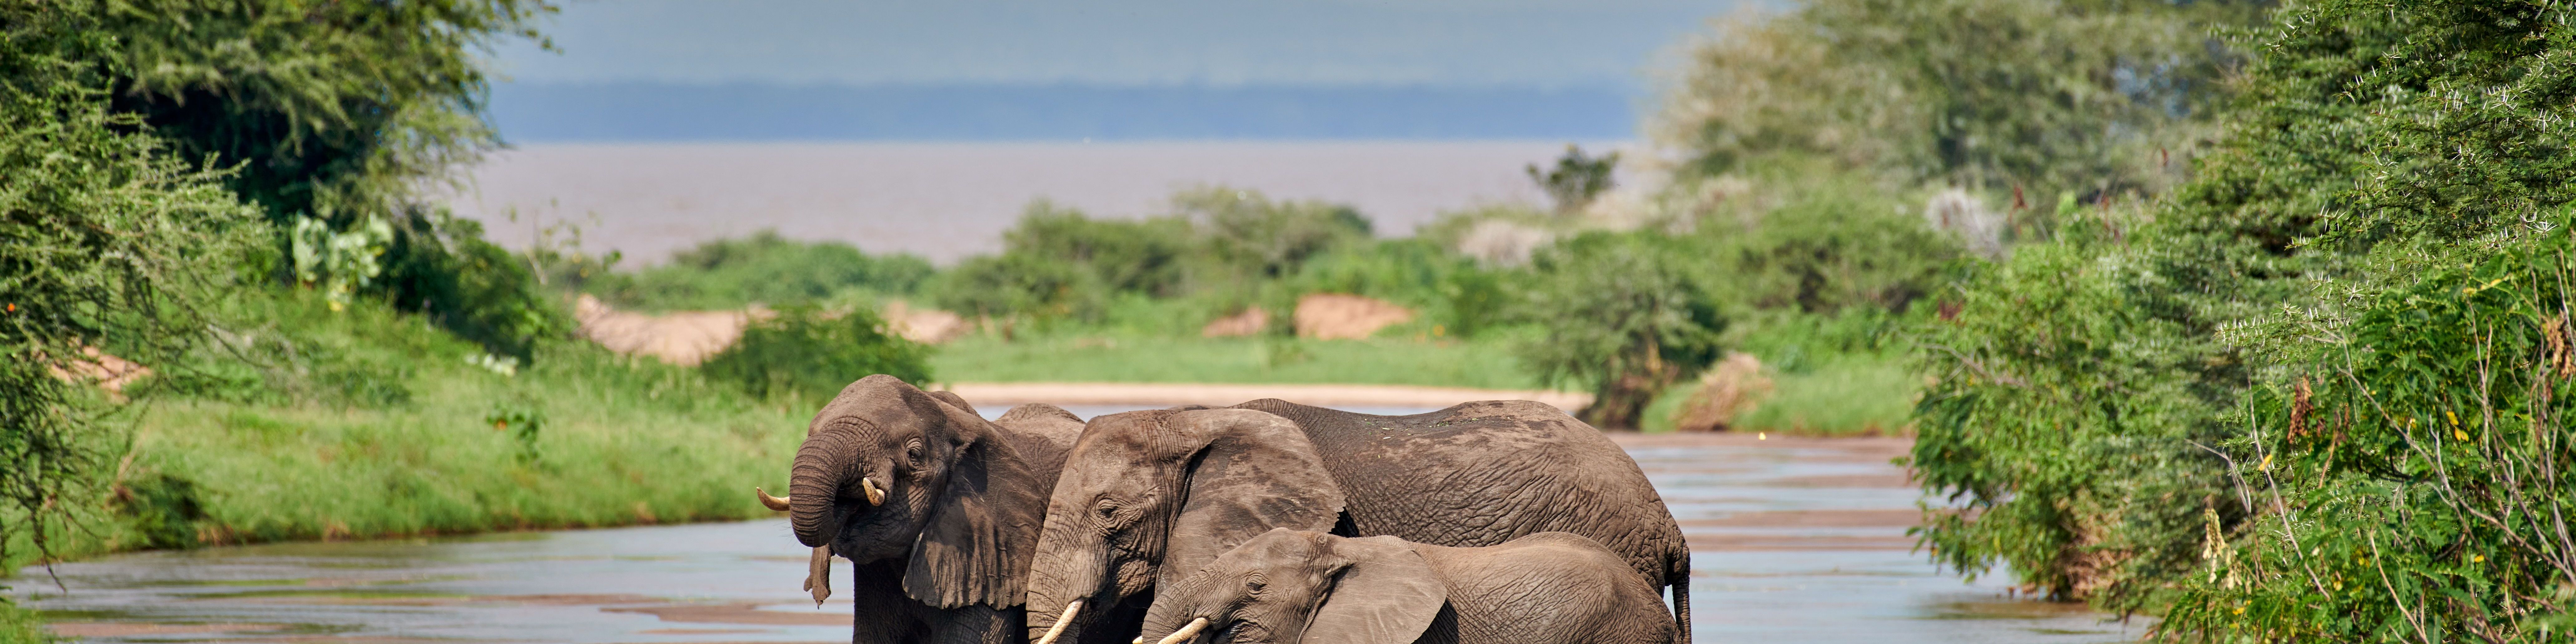 Herde Afrikanischer Elefanten, Loxodonta africana, im Manyara-Nationalpark, Tansania, Afrika   |herd of African bush elephants, Loxodonta africana, in Manyara National Park, Tanzania, Africa|